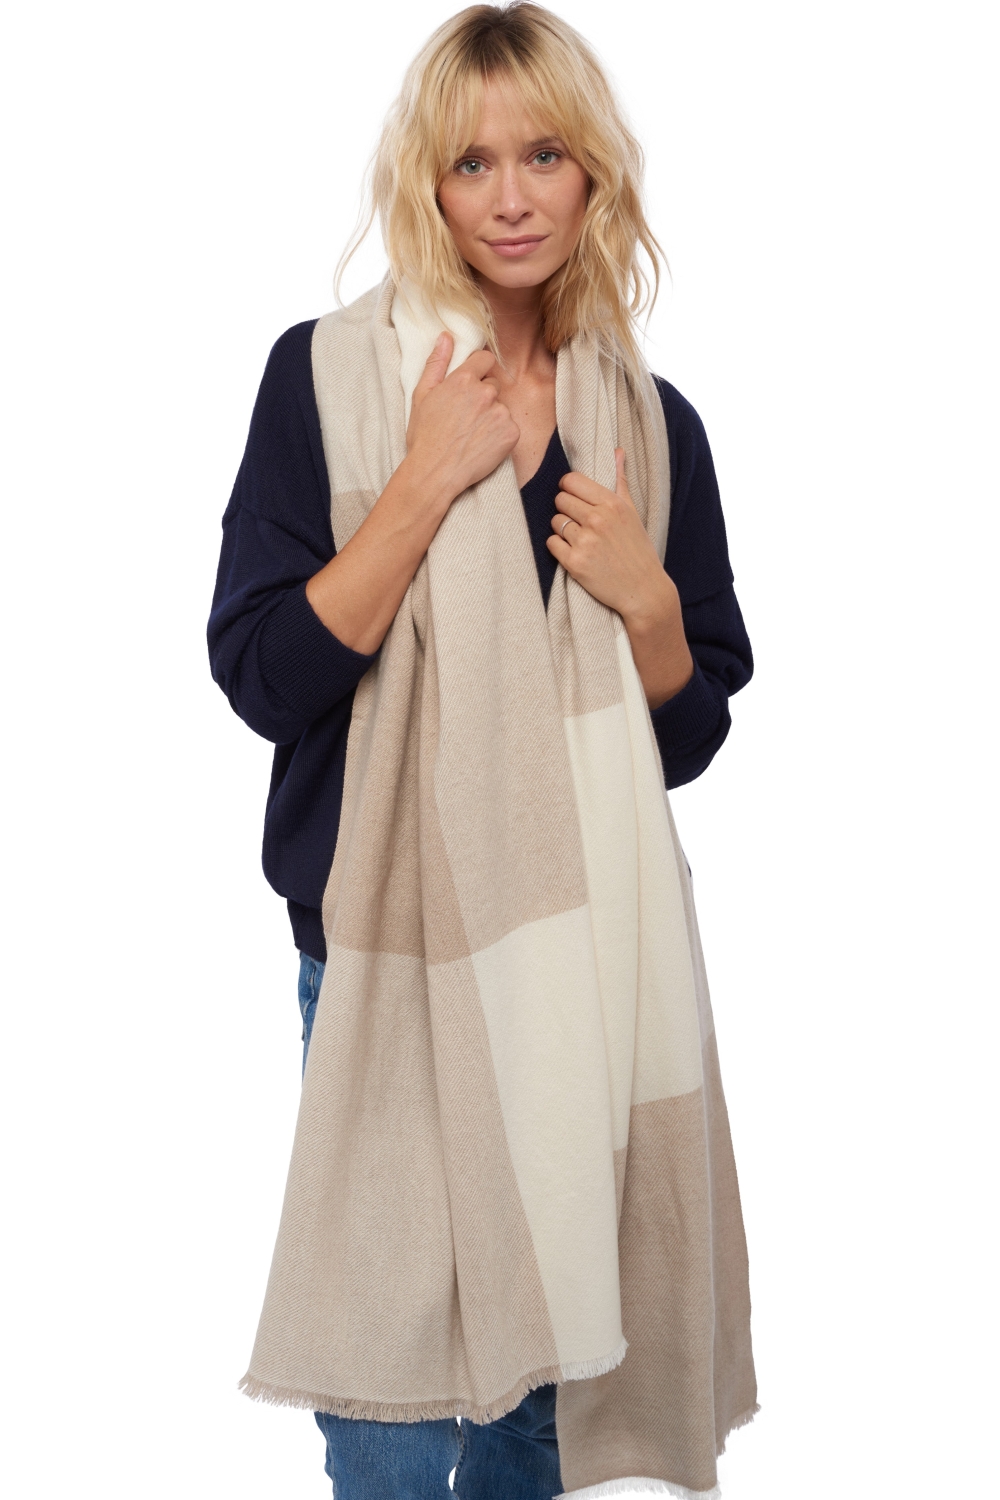 Cashmere accessories scarves mufflers verona natural ecru natural stone 225 x 75 cm